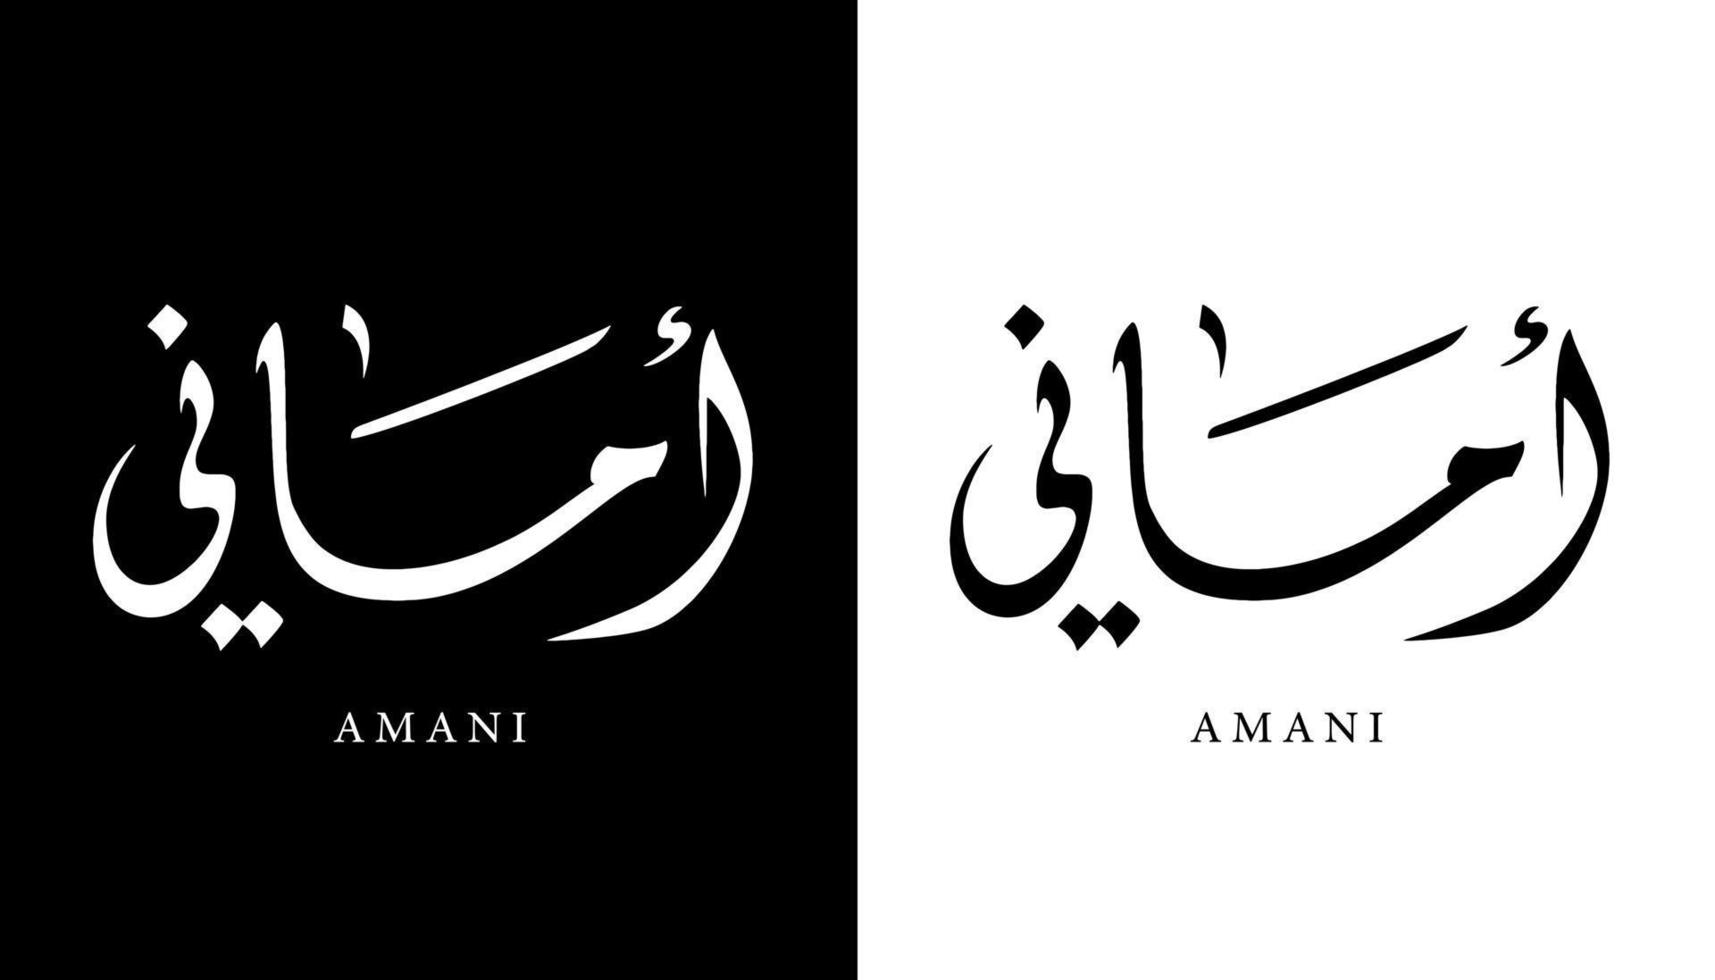 arabisk kalligrafi namn översatt 'amani' arabiska bokstäver alfabet teckensnitt bokstäver islamisk logotyp vektorillustration vektor